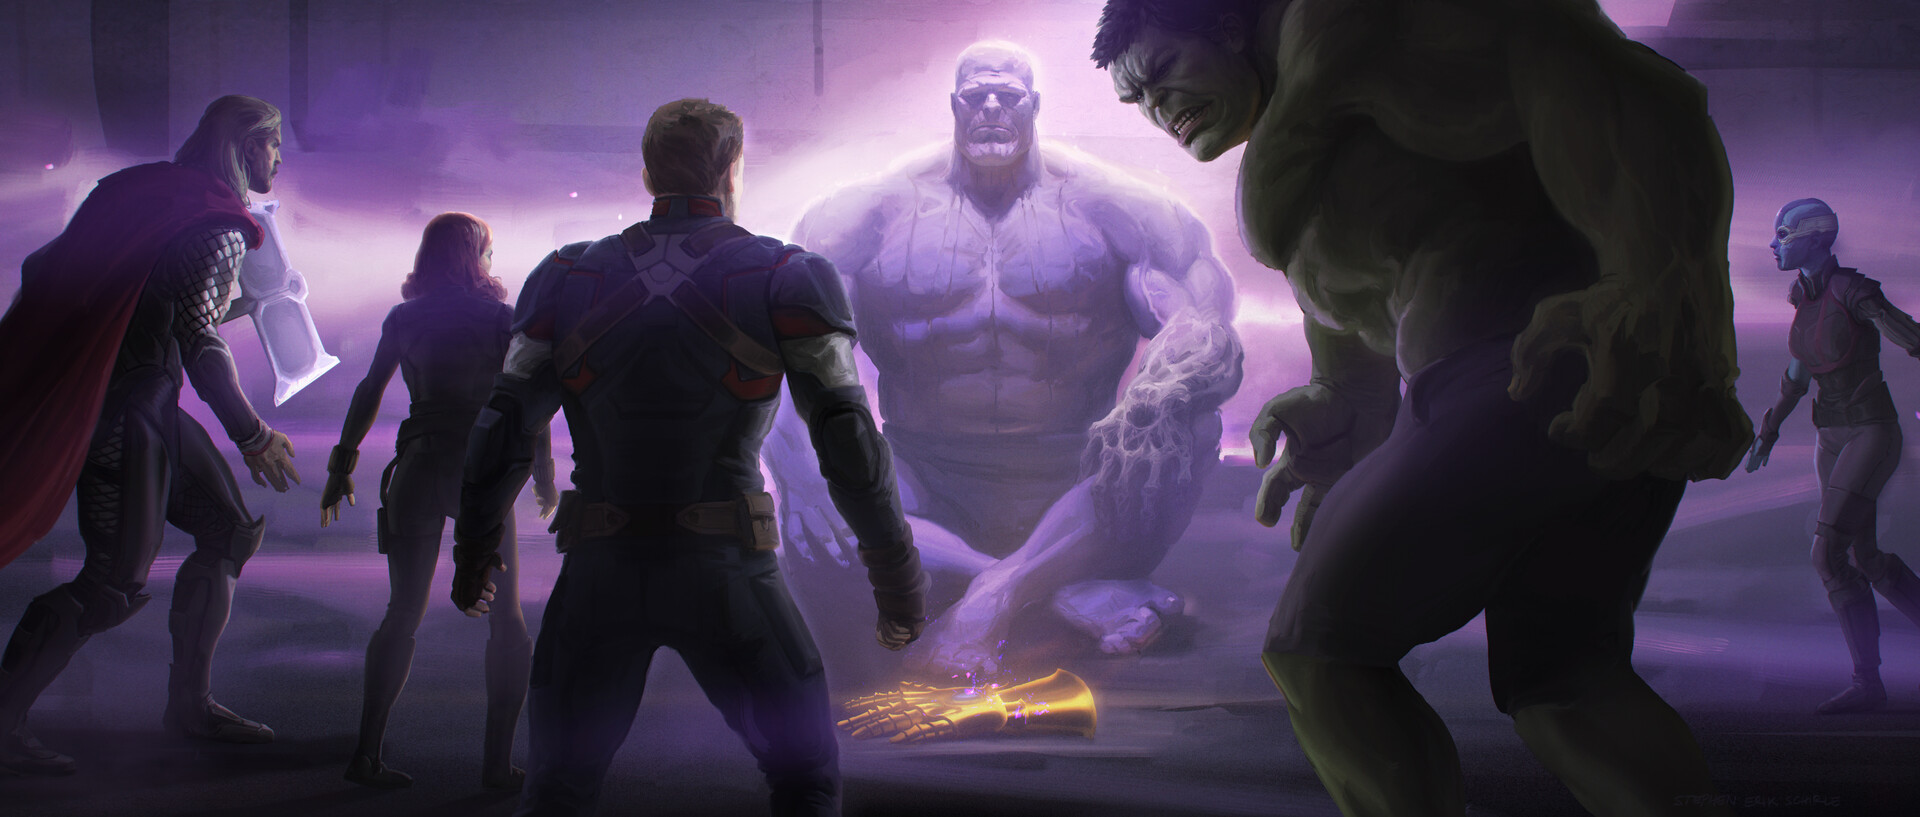 Avengers Endgame Art by Stephen Schirle